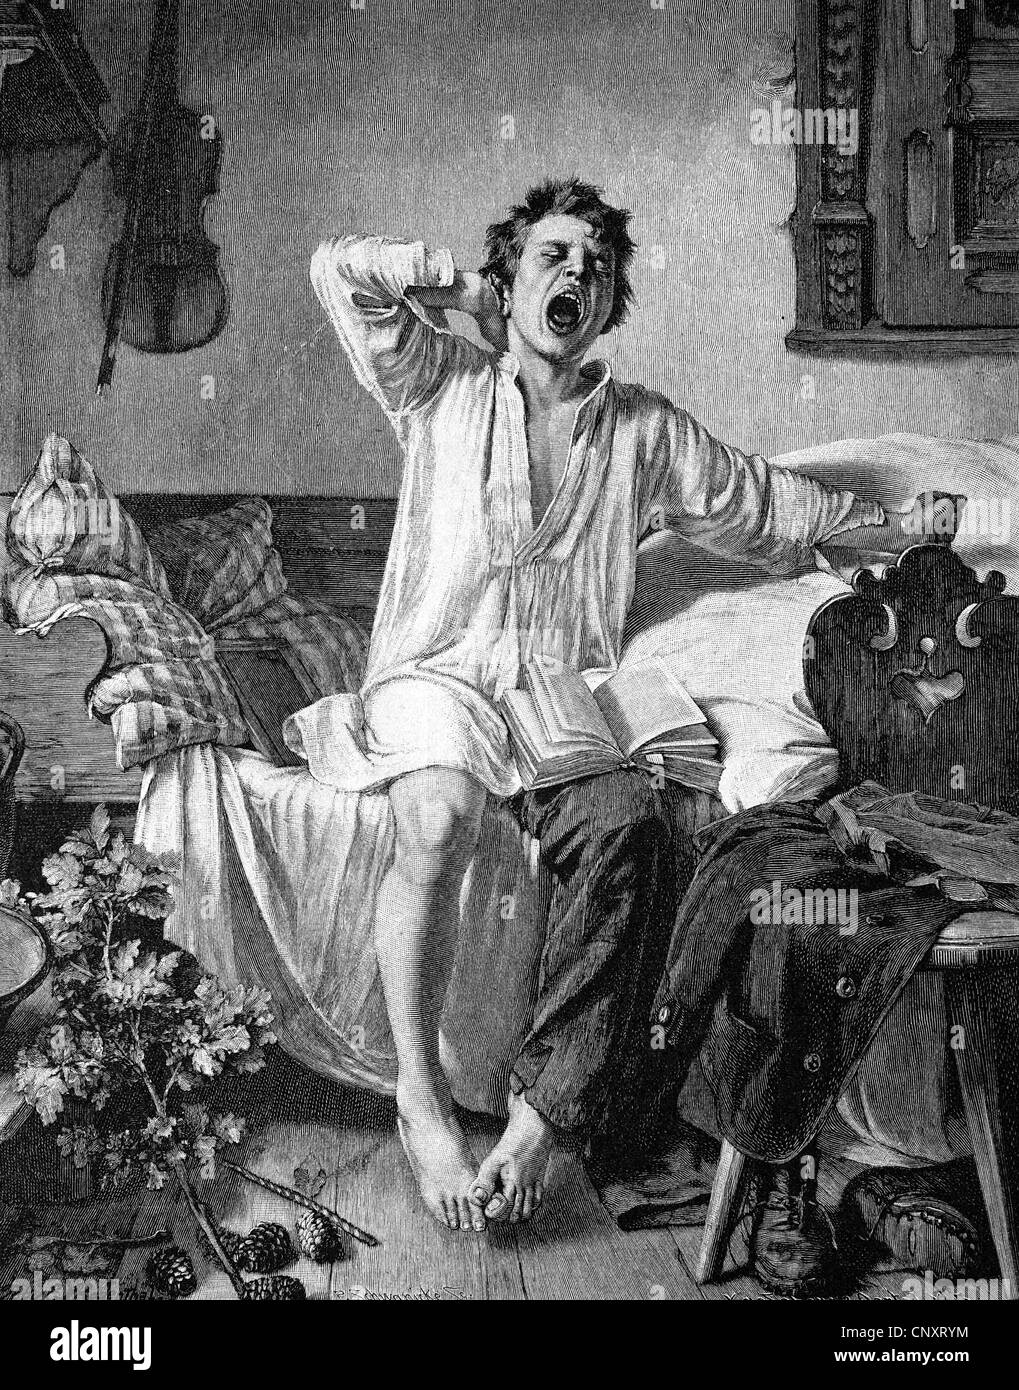 Jeune homme est encore fatigué le matin, Historique de la gravure, 1888 Banque D'Images